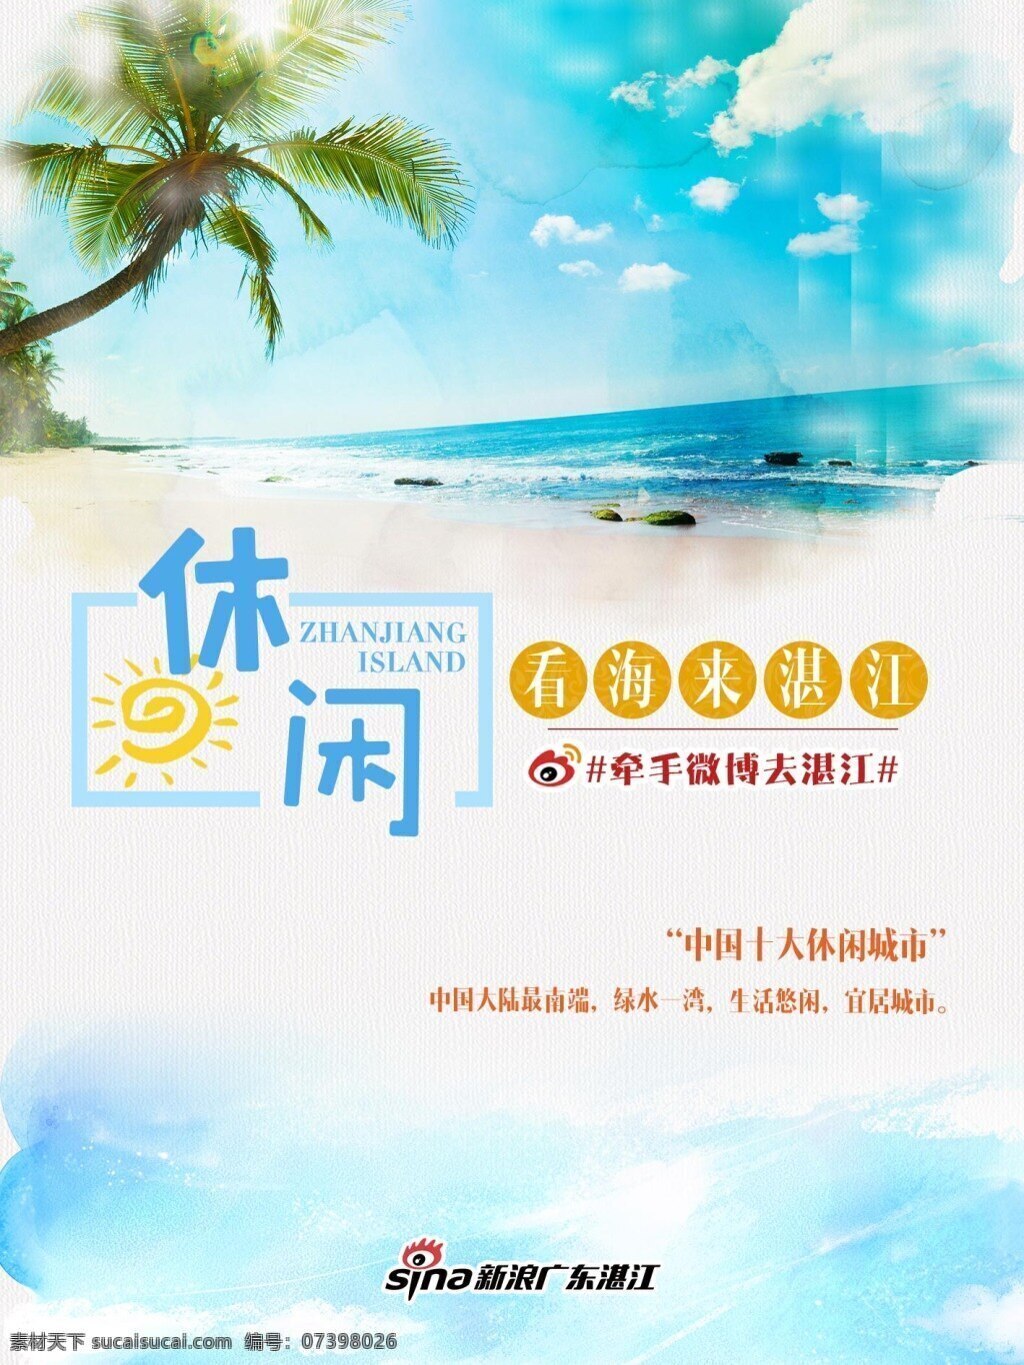 湛江旅游海报 岛 海报 椰树 天空 蓝 双十一 海滩